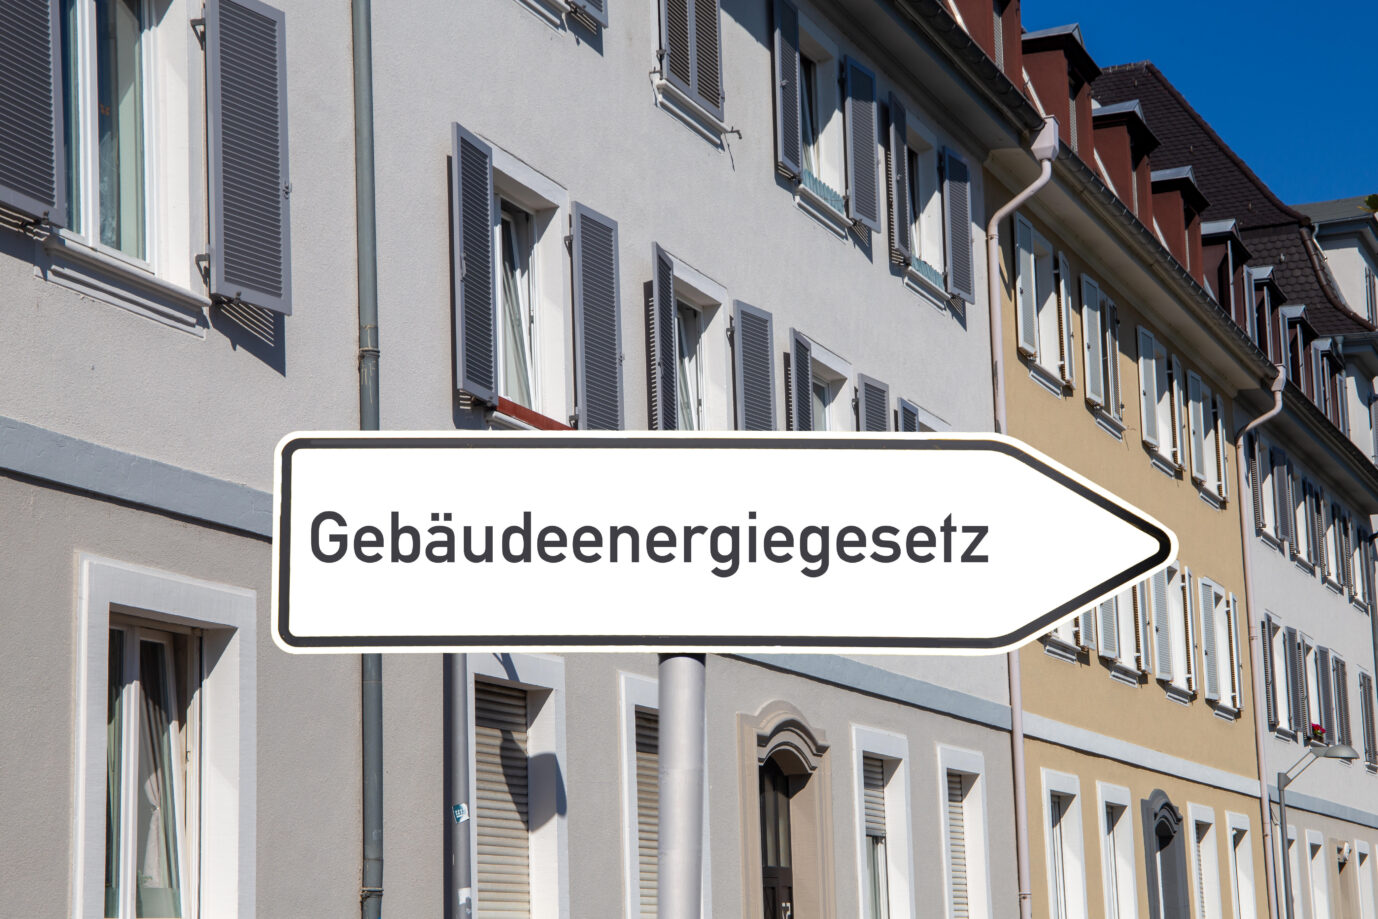 Heizung-Regeln: Schild mit der Aufschrift "Gebäudeenergiegesetz" (Symbolbild)